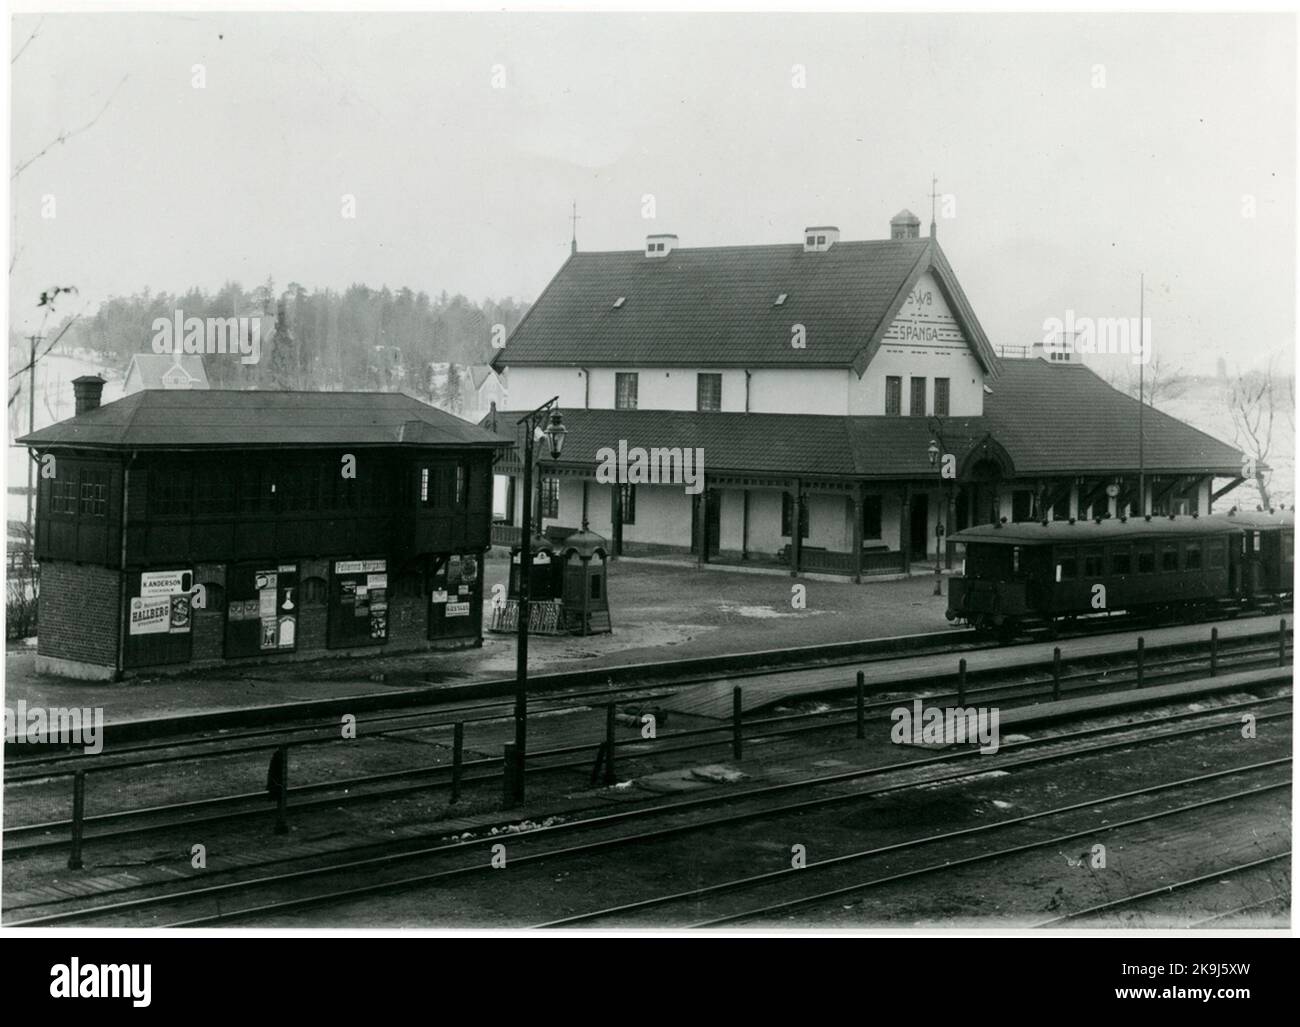 Bahnhof Spånga. Stockholm-Västerås-Bergslagen Railway, SWB. Der Bahnhof wurde 15/12 1876 eingeweiht. 1908 wurde ein neues Bahnhofshaus errichtet, das 1975 abgerissen und durch ein Blechgebäude ersetzt wurde. 2004 wurde ein neues Bahnhofshaus errichtet. Seit 1969 ist der Bahnhof nur ein S-Bahnhof. Stockfoto